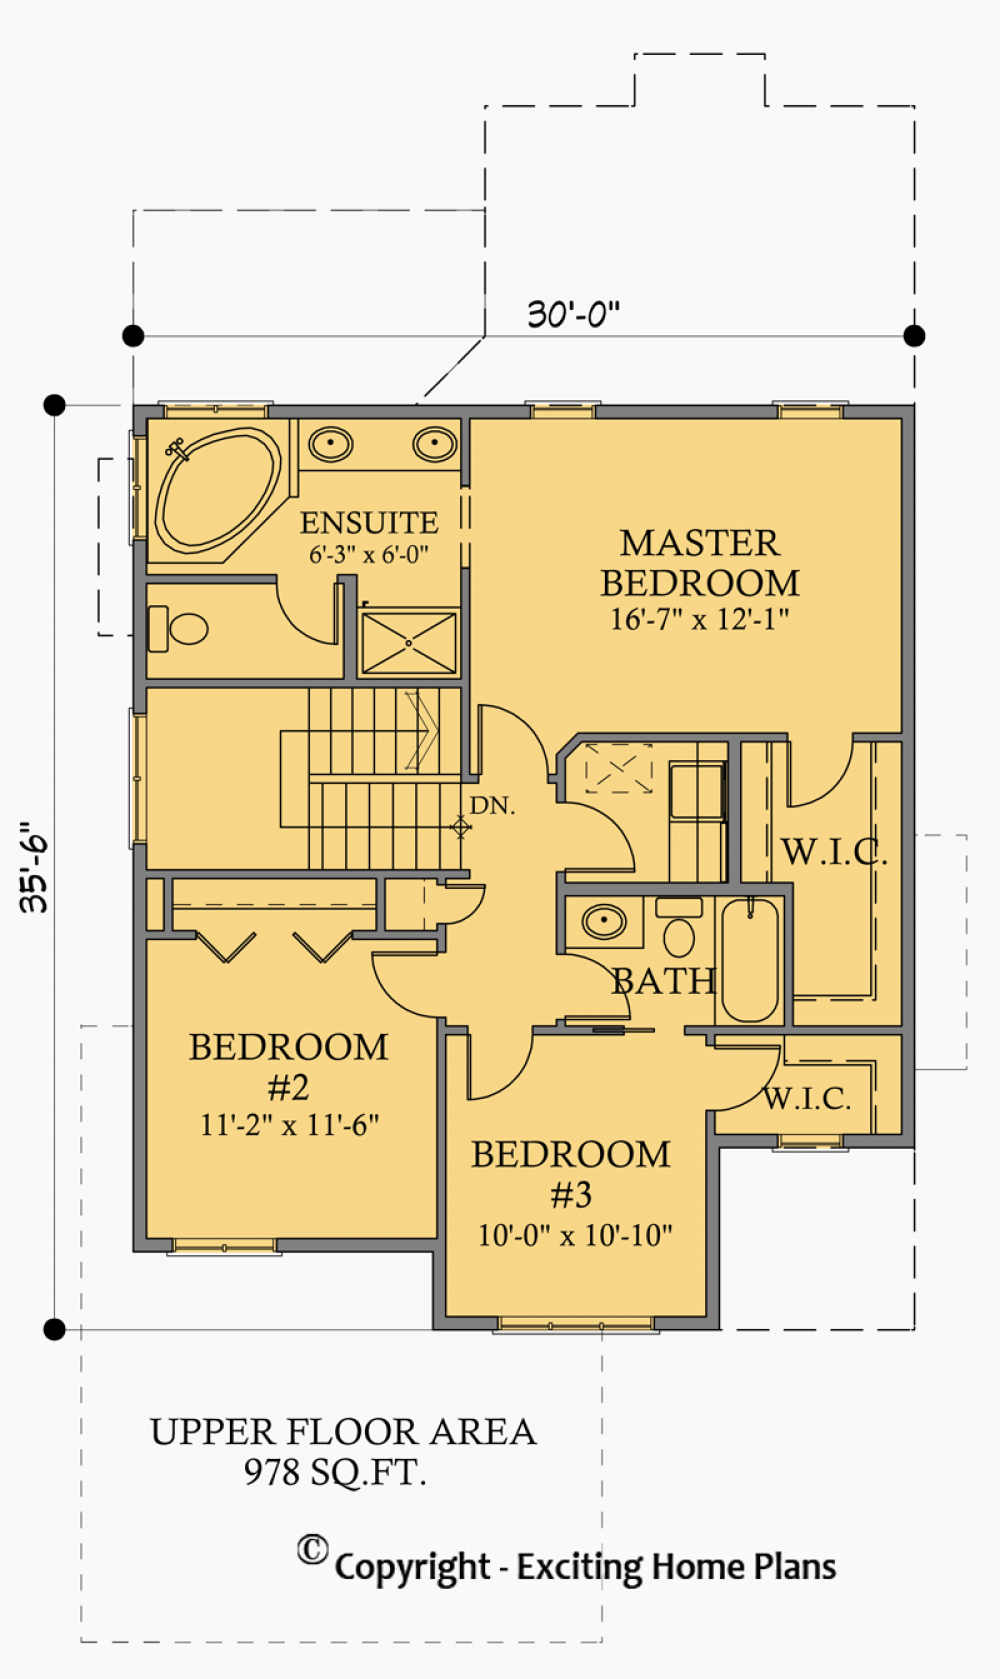 House Plan E1026-10 Upper Floor Plan